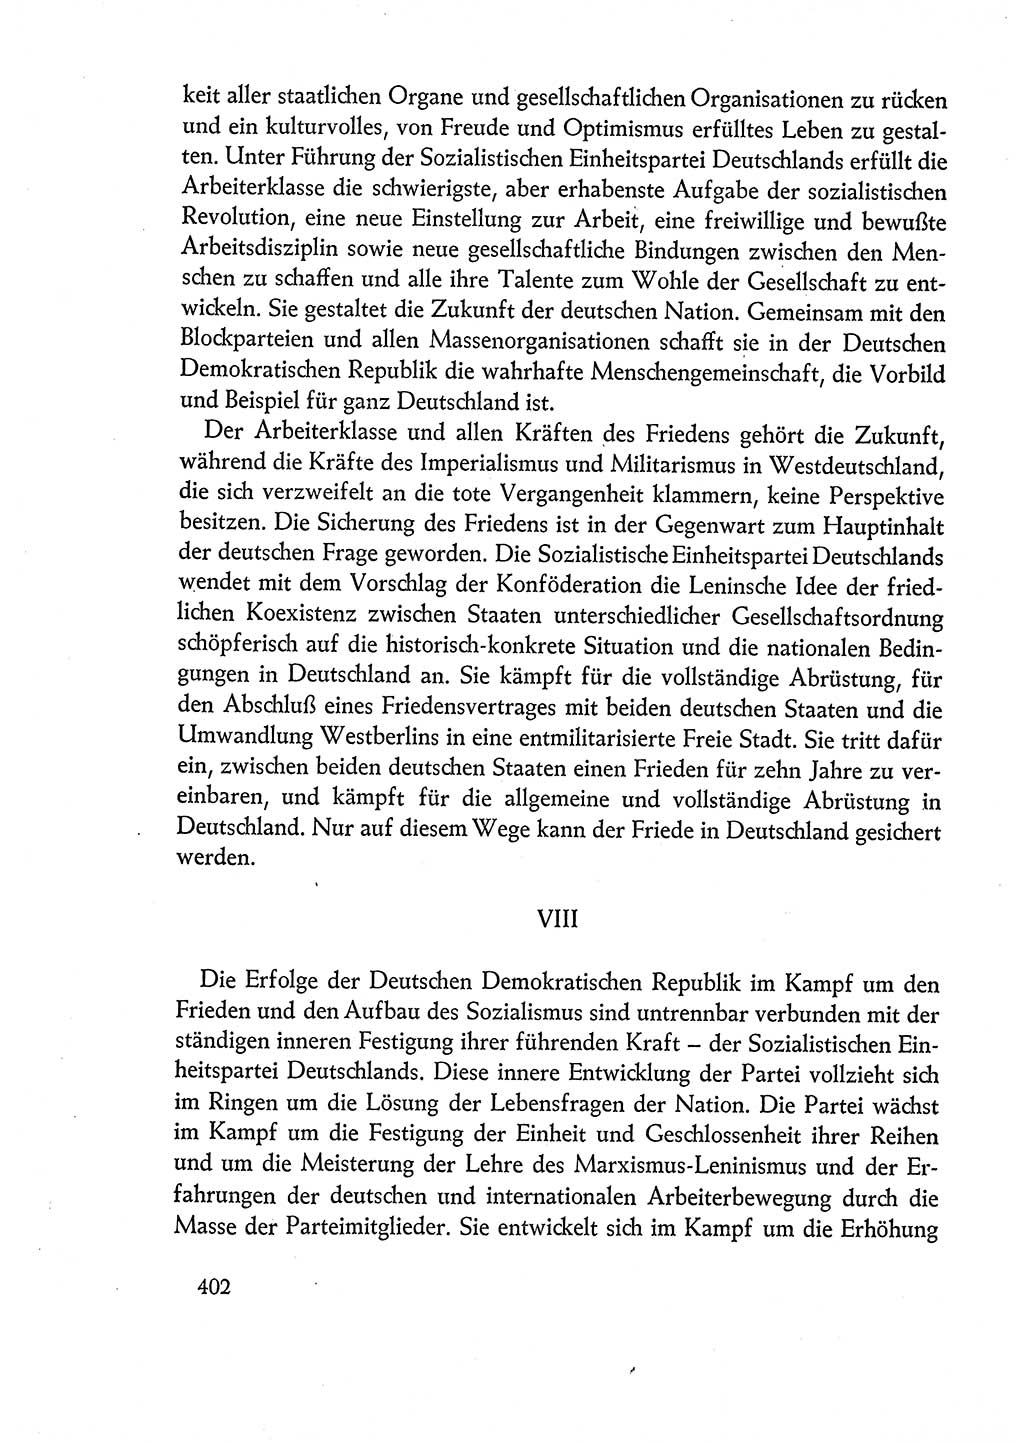 Dokumente der Sozialistischen Einheitspartei Deutschlands (SED) [Deutsche Demokratische Republik (DDR)] 1960-1961, Seite 402 (Dok. SED DDR 1960-1961, S. 402)